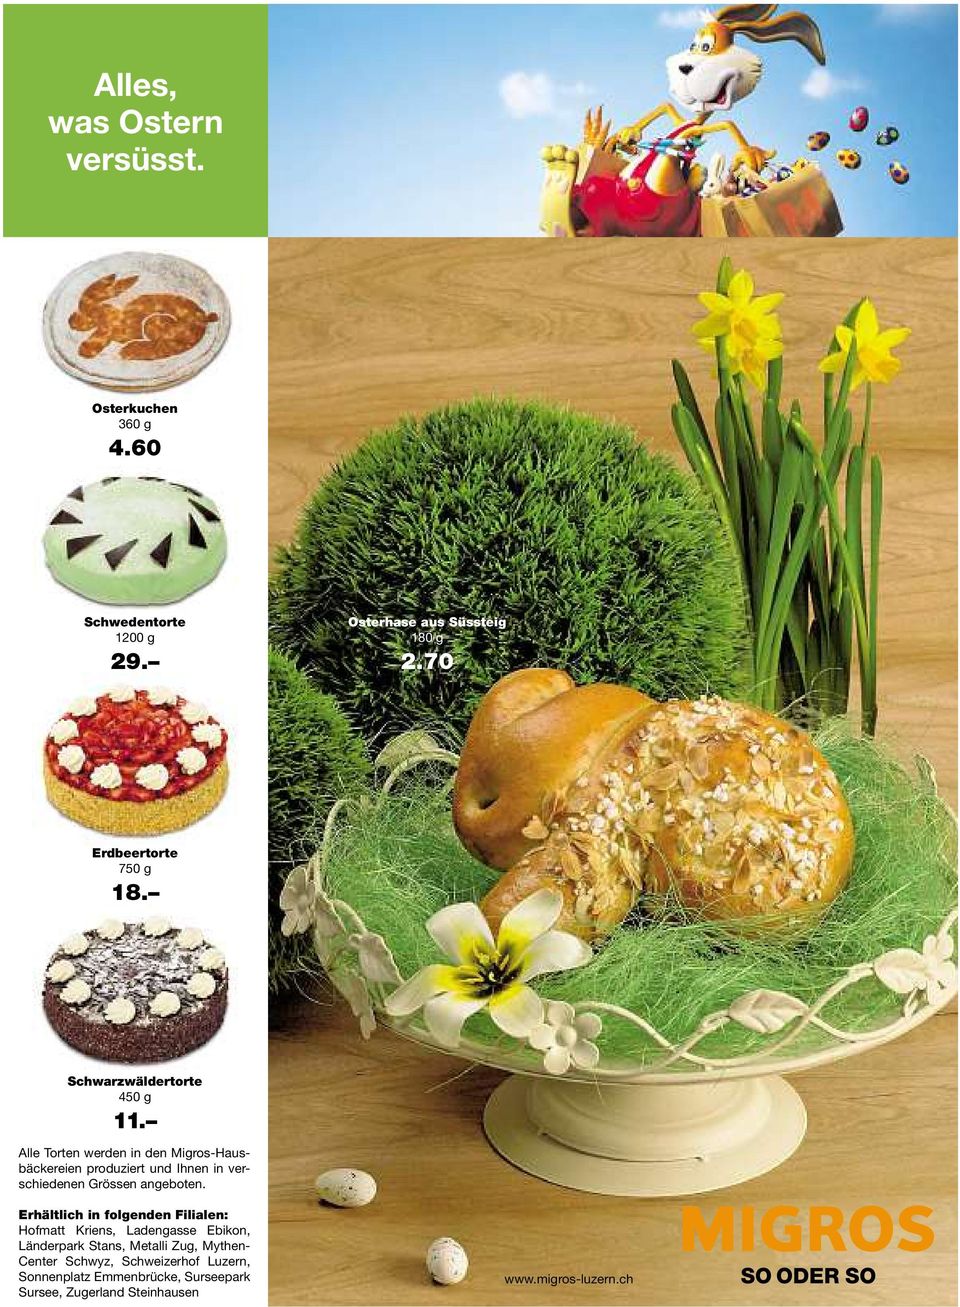 Alle Torten werden in den Migros-Hausbäckereien produziert und Ihnen in verschiedenen Grössen angeboten.